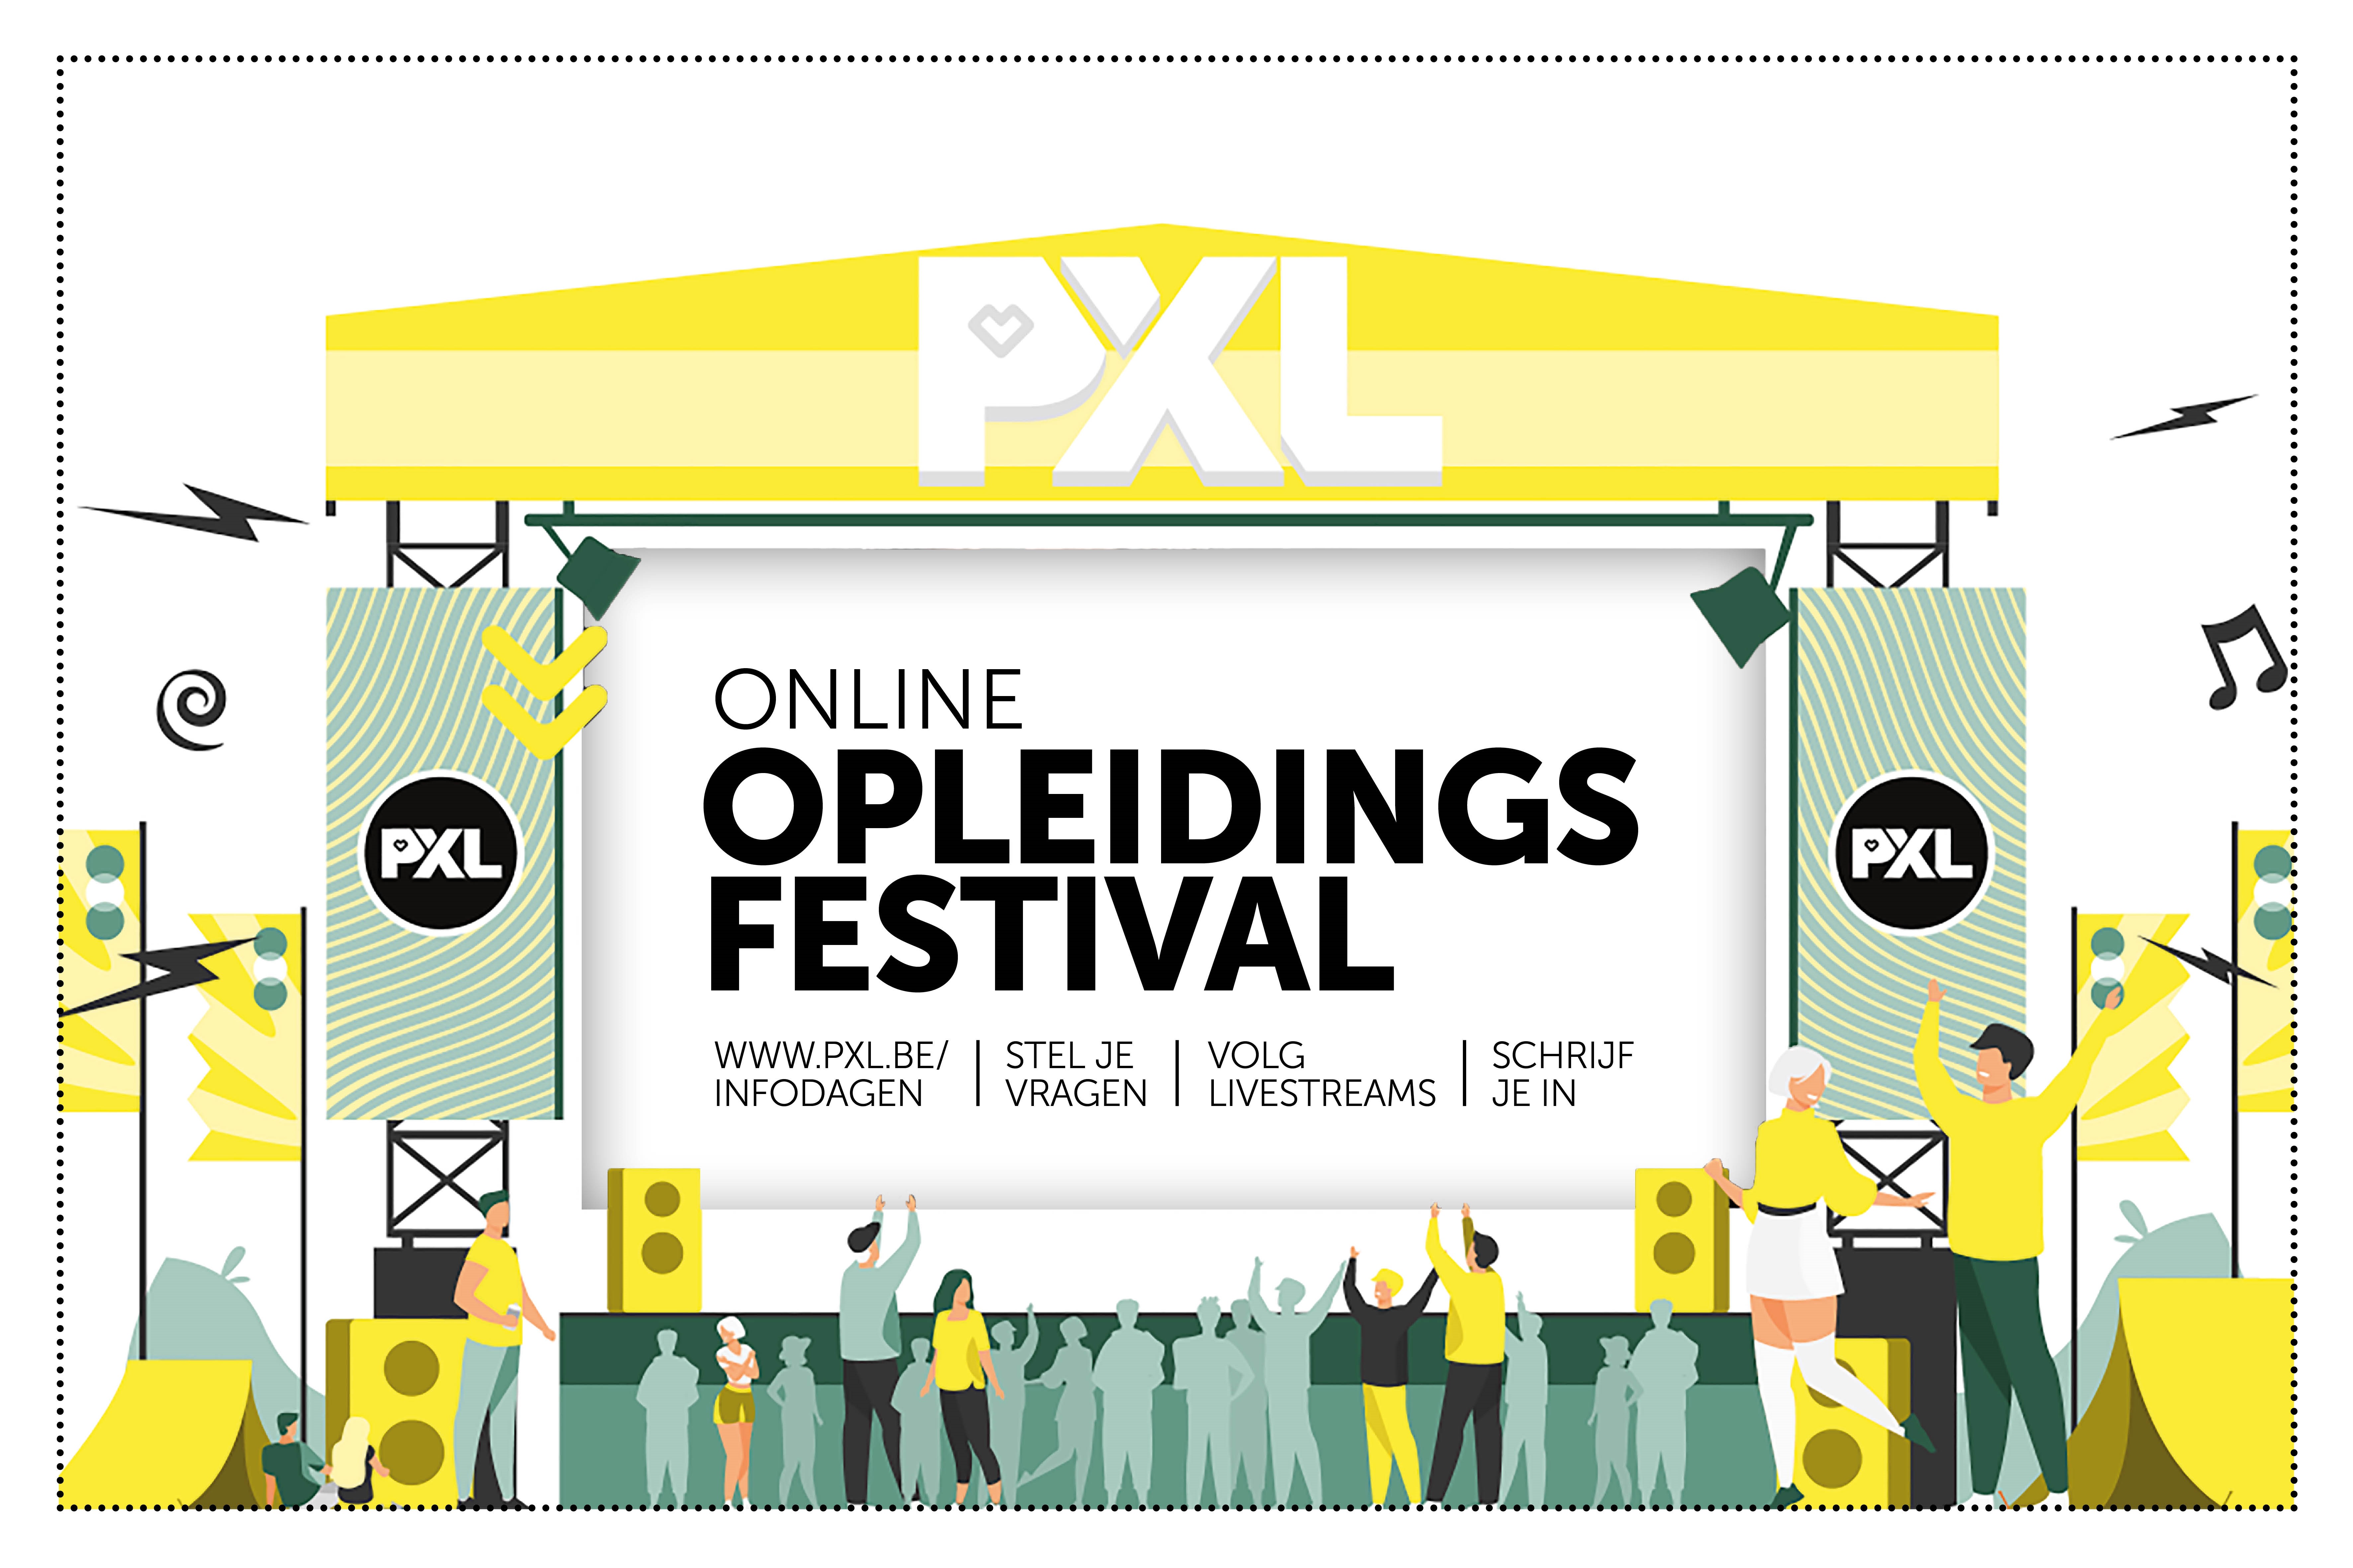 PXL organiseert een nieuw online opleidingsfestival (Hasselt) - Het ...